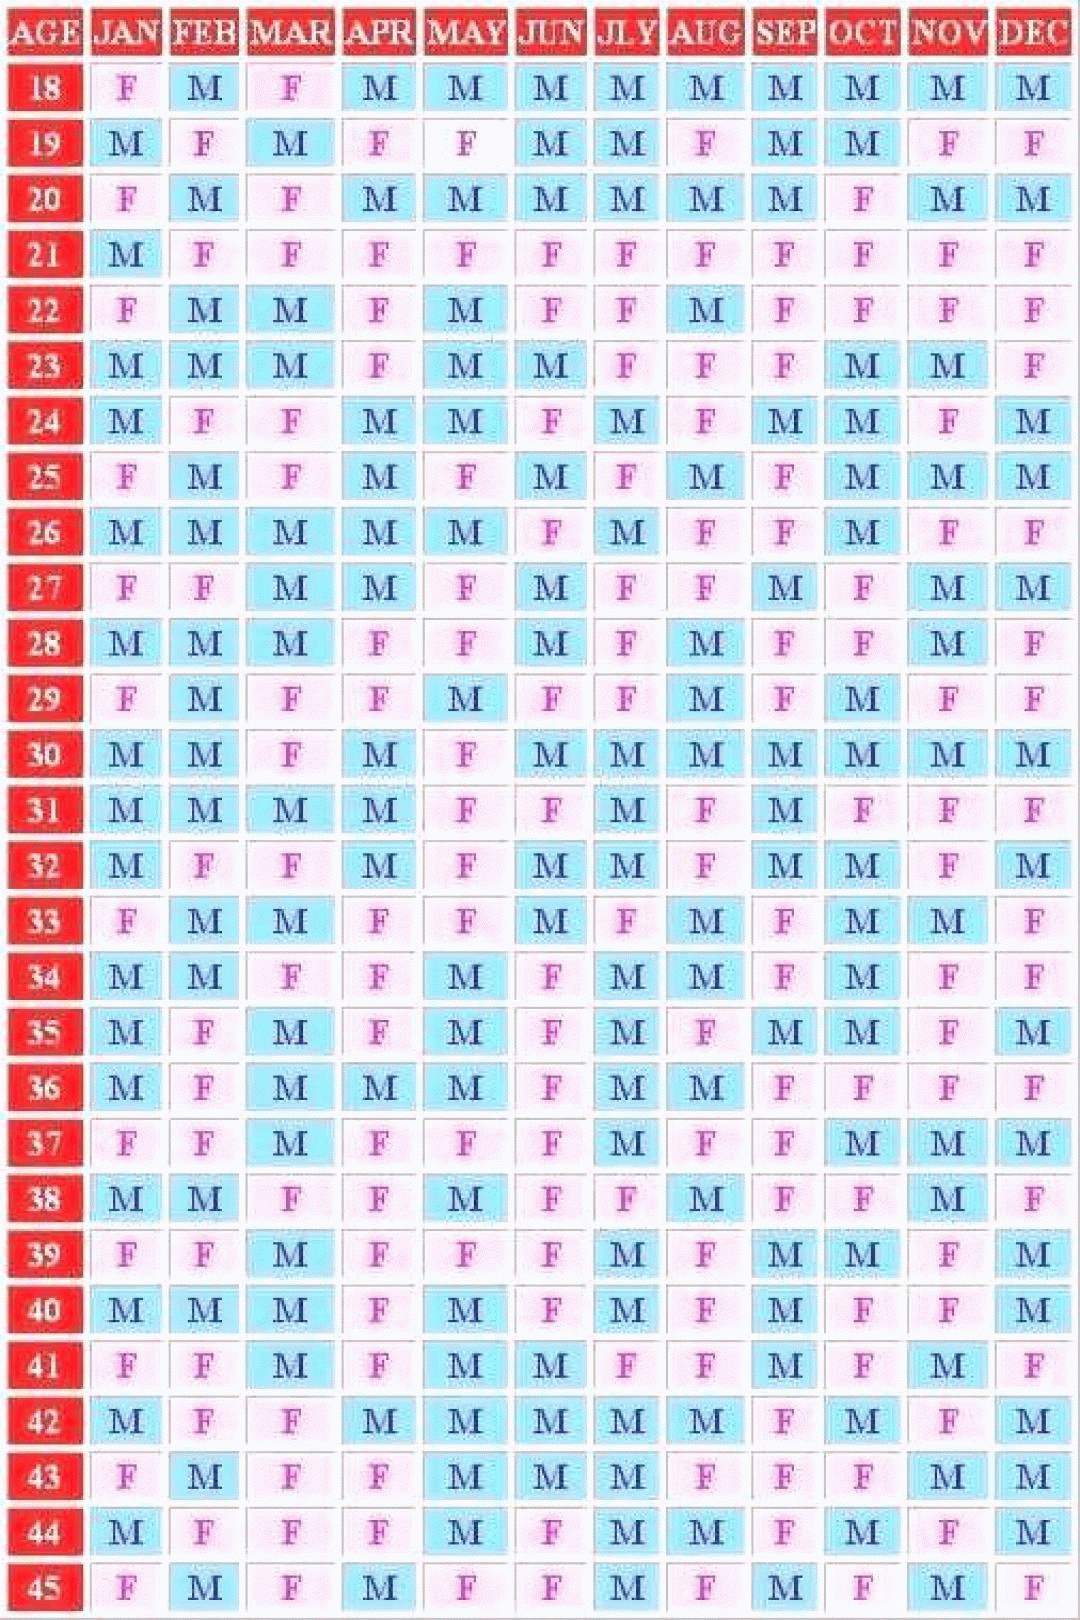 Mayan Calendar 2019 Predictions Printable Template In 2020 throughout Mayan Calendar Gender